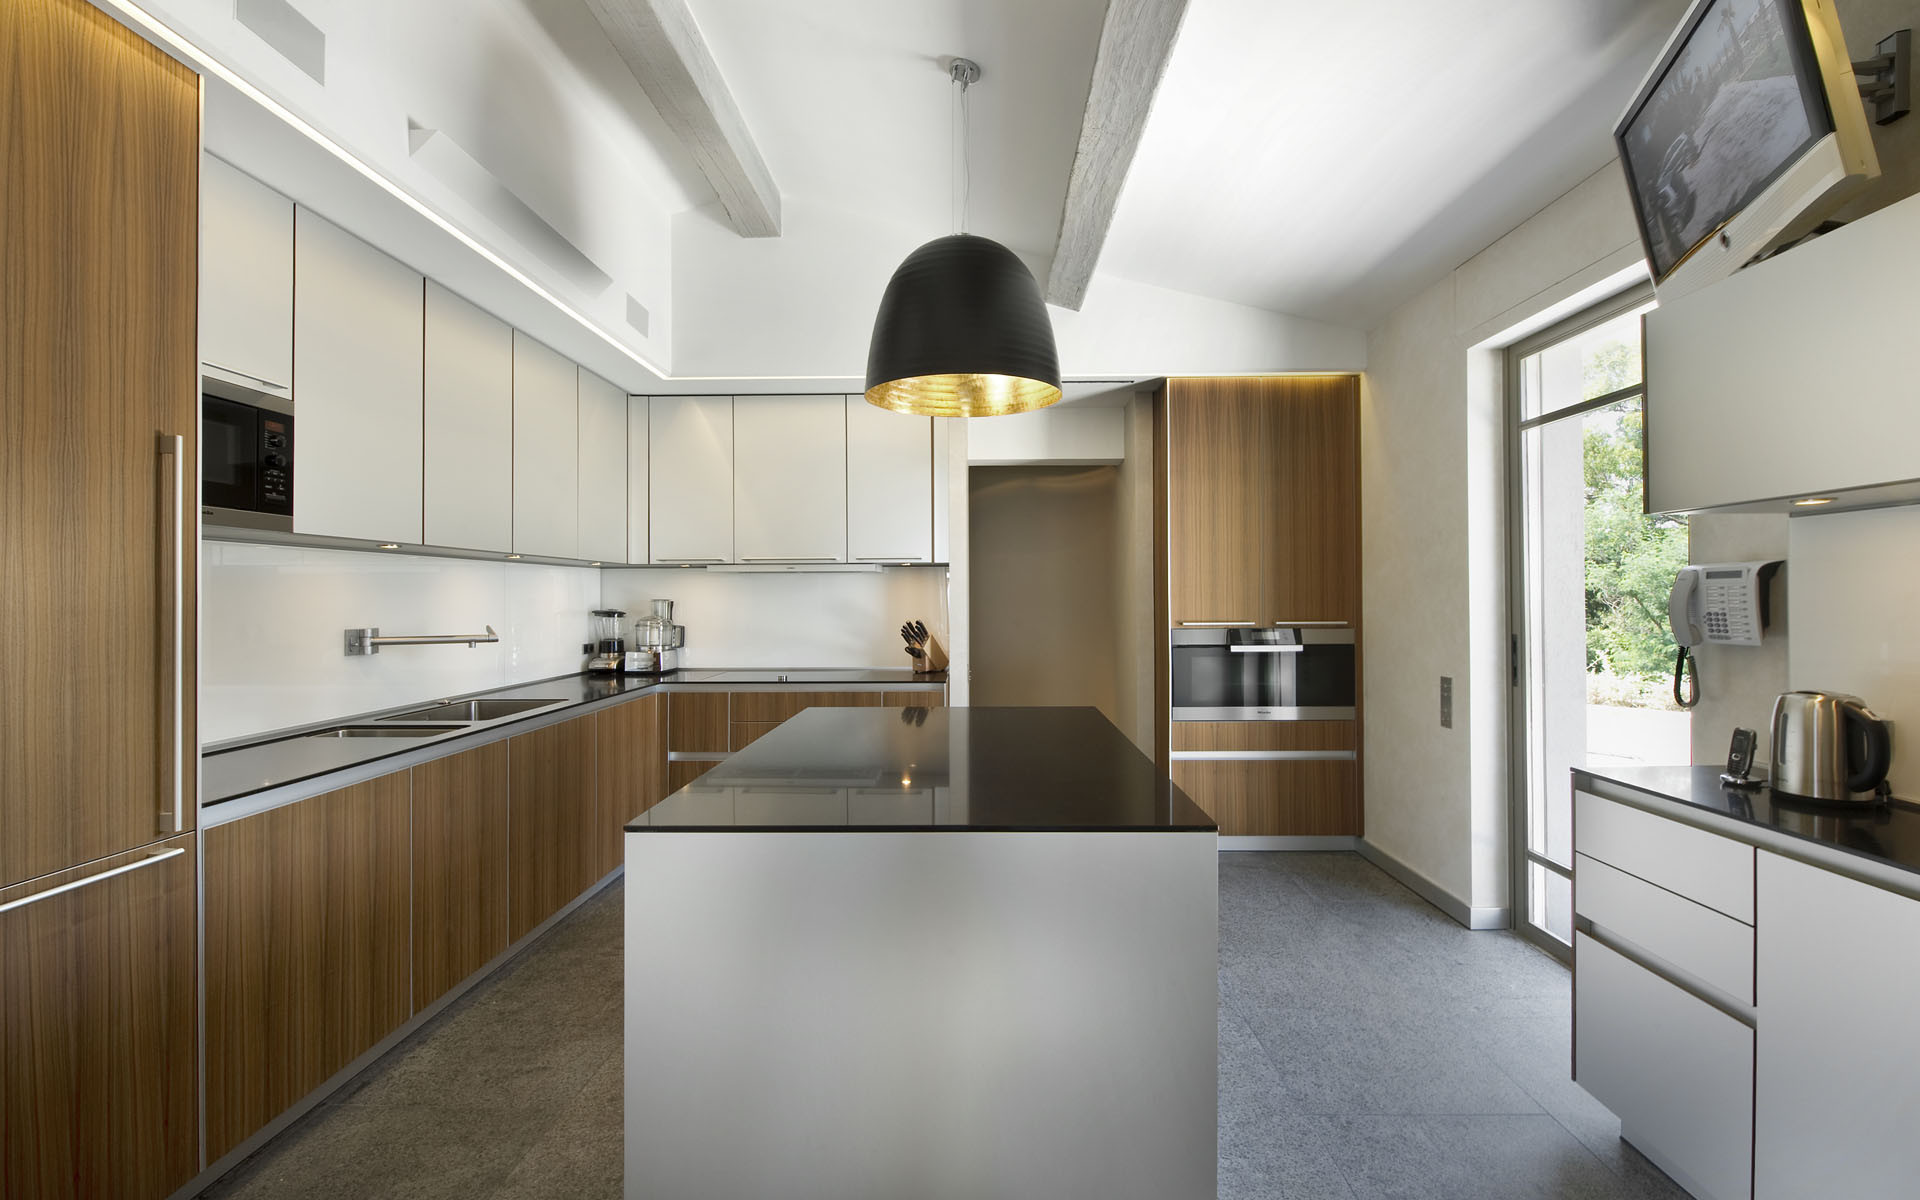 Interior Design Ideas For Kitchen
 25 AMAZING MINIMALIST KITCHEN DESIGN IDEAS